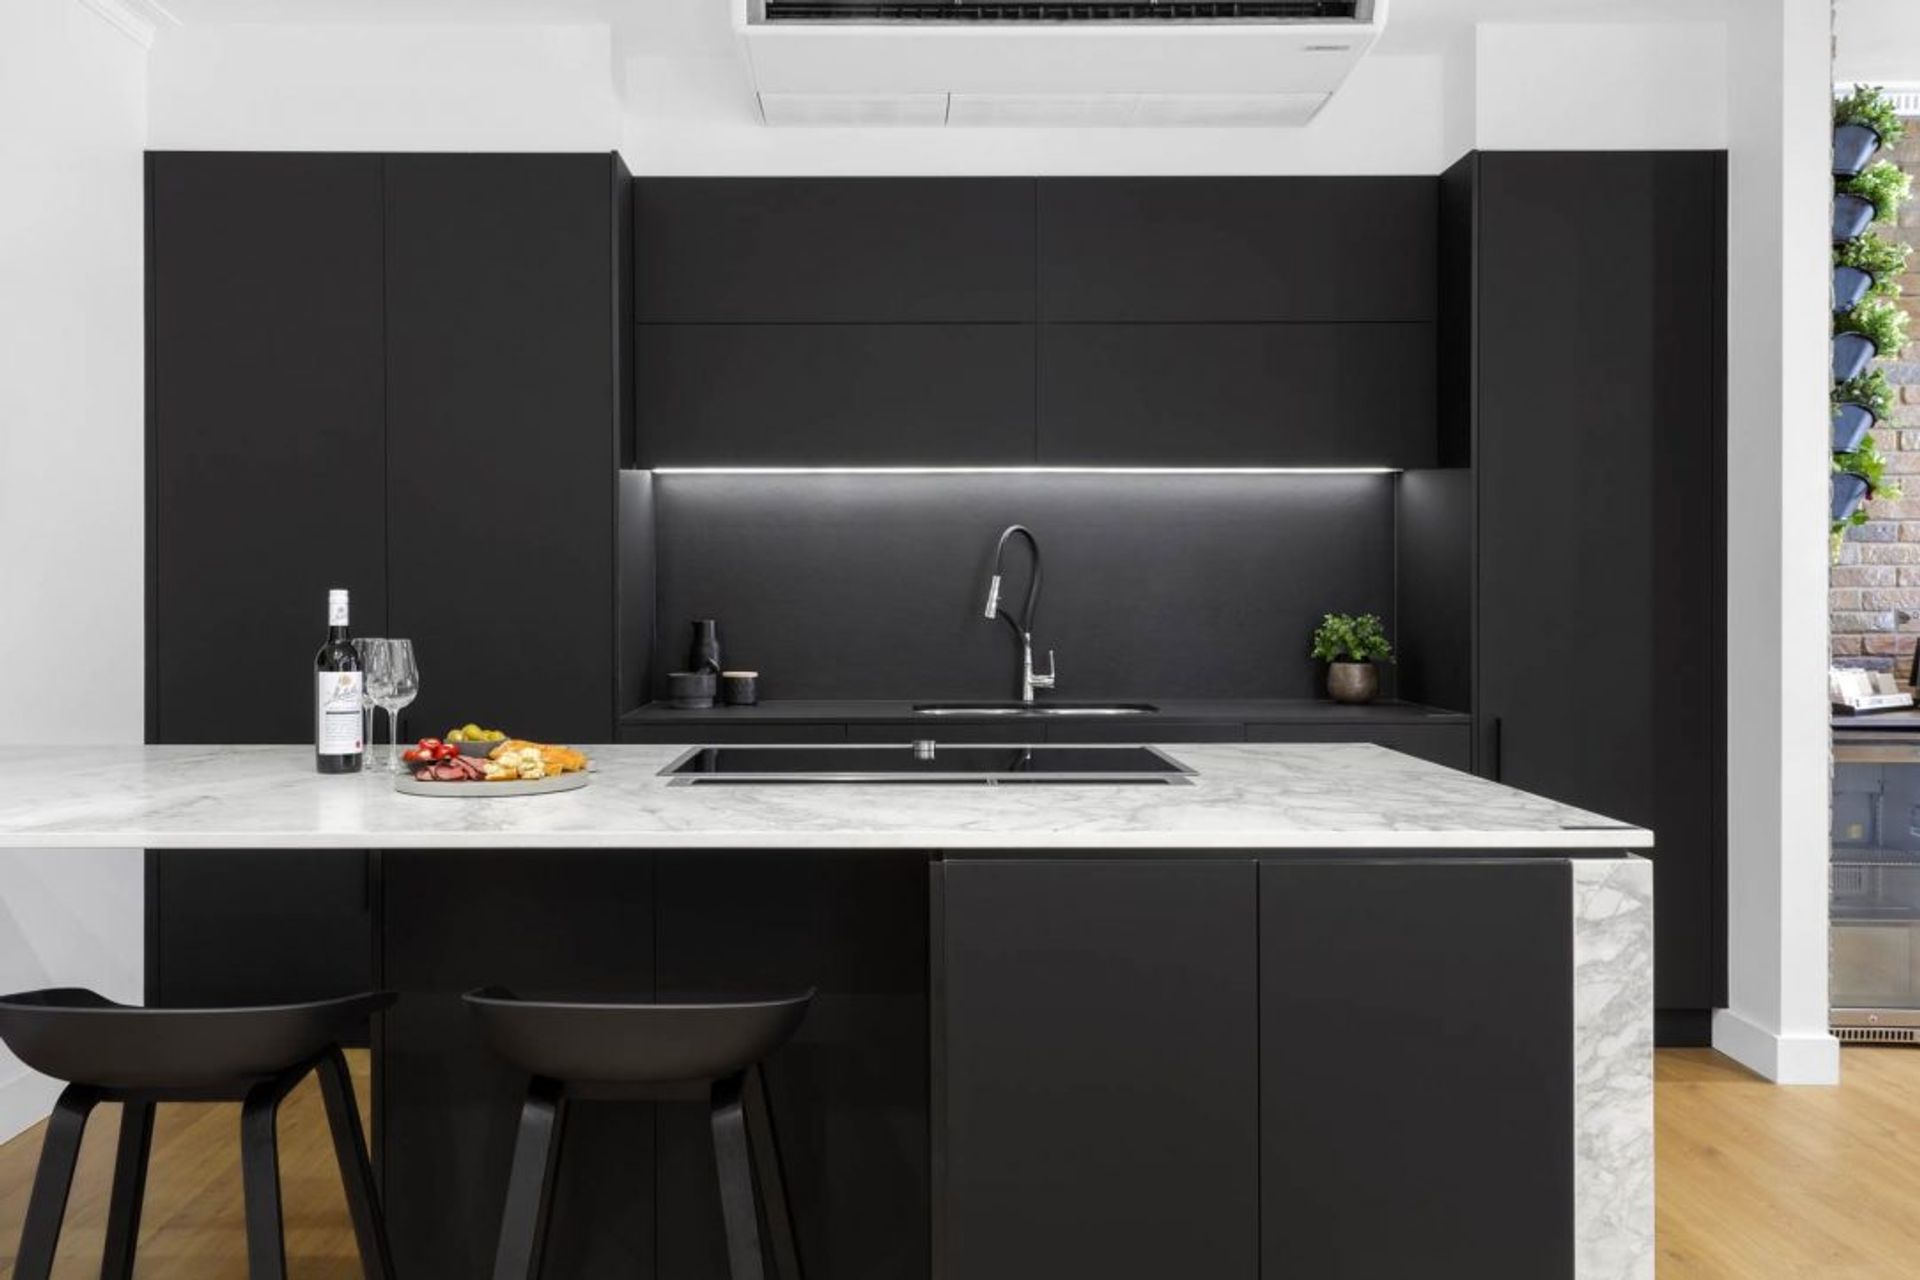 modern-kitchen-design-sydney-kitchen-showroom-dekton-portum-benchtop-black-cabinets-7-1084x723.jpg